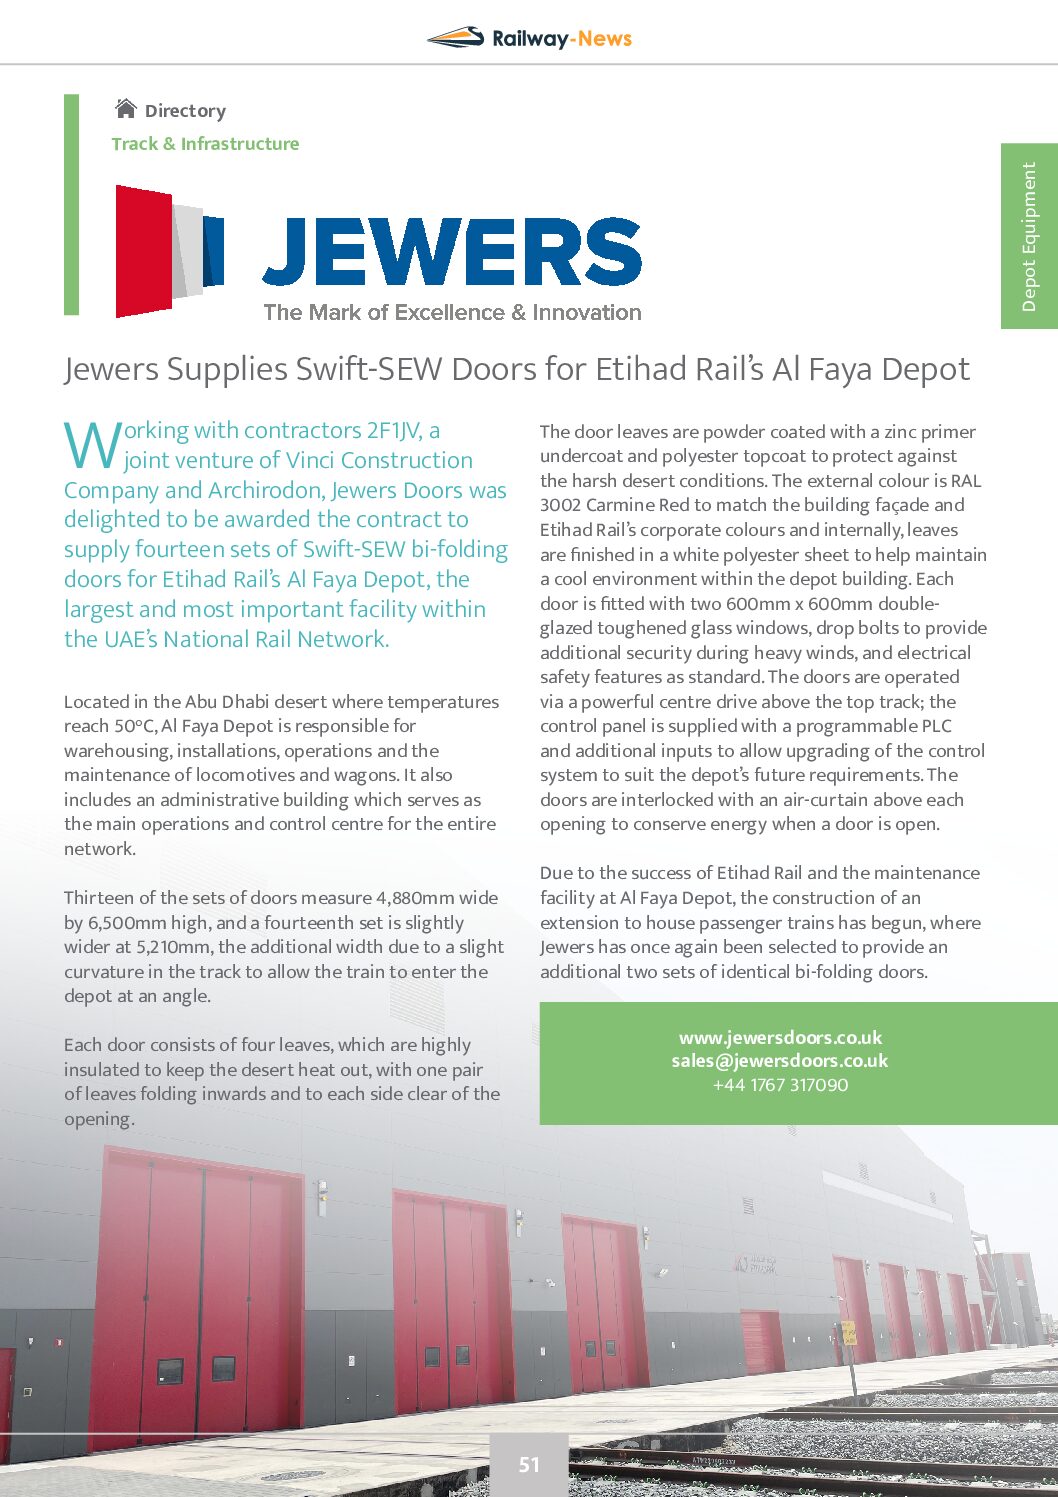 Jewers Supplies Swift-SEW Doors for Etihad Rail’s Al Faya Depot